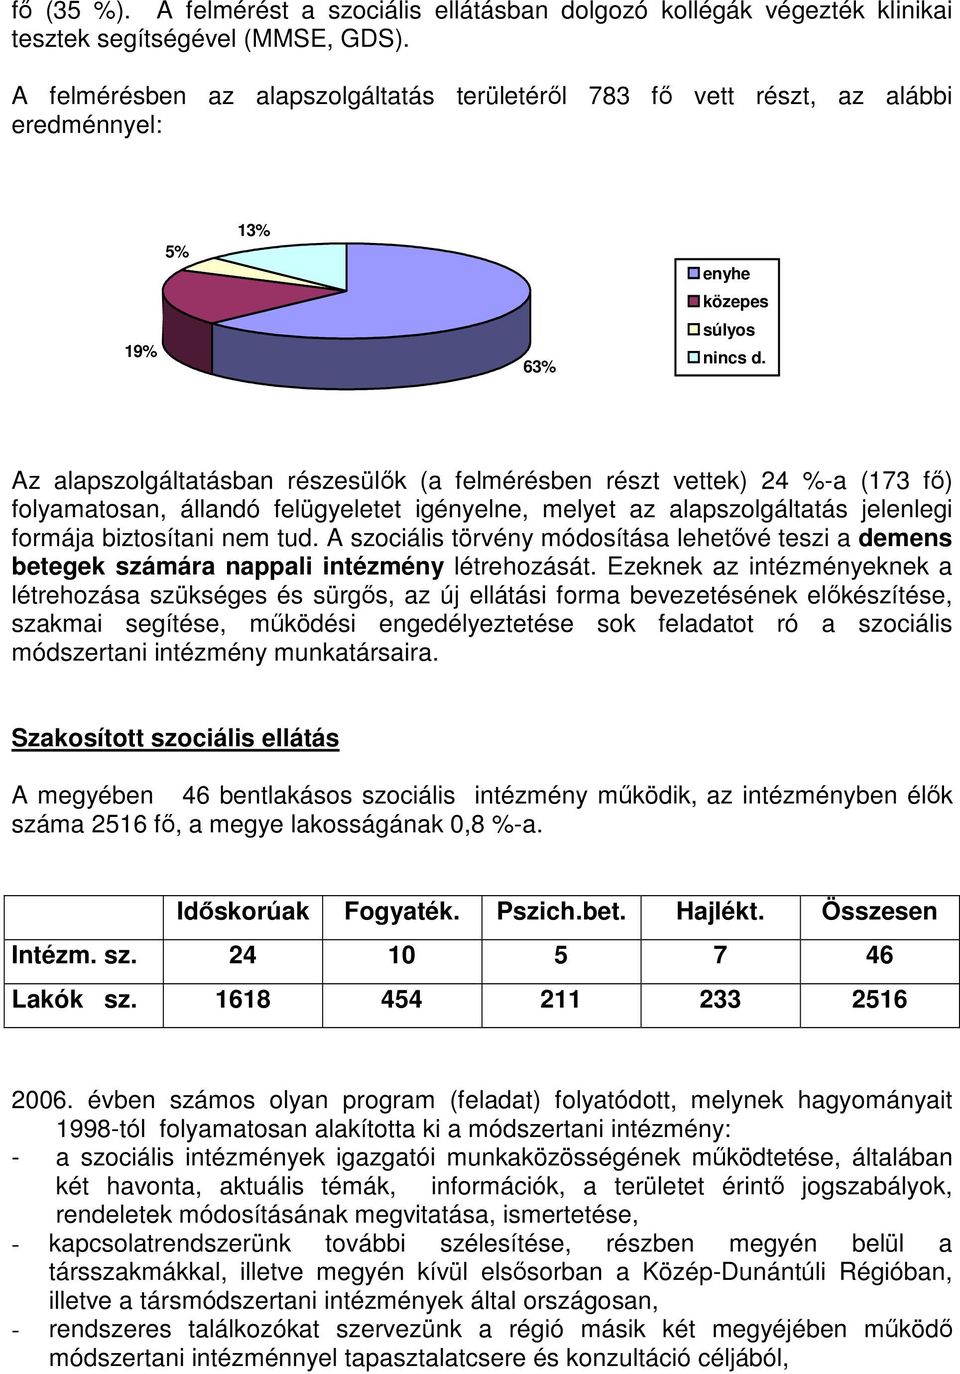 Az alapszolgáltatásban részesülık (a felmérésben részt vettek) 24 %-a (173 fı) folyamatosan, állandó felügyeletet igényelne, melyet az alapszolgáltatás jelenlegi formája biztosítani nem tud.